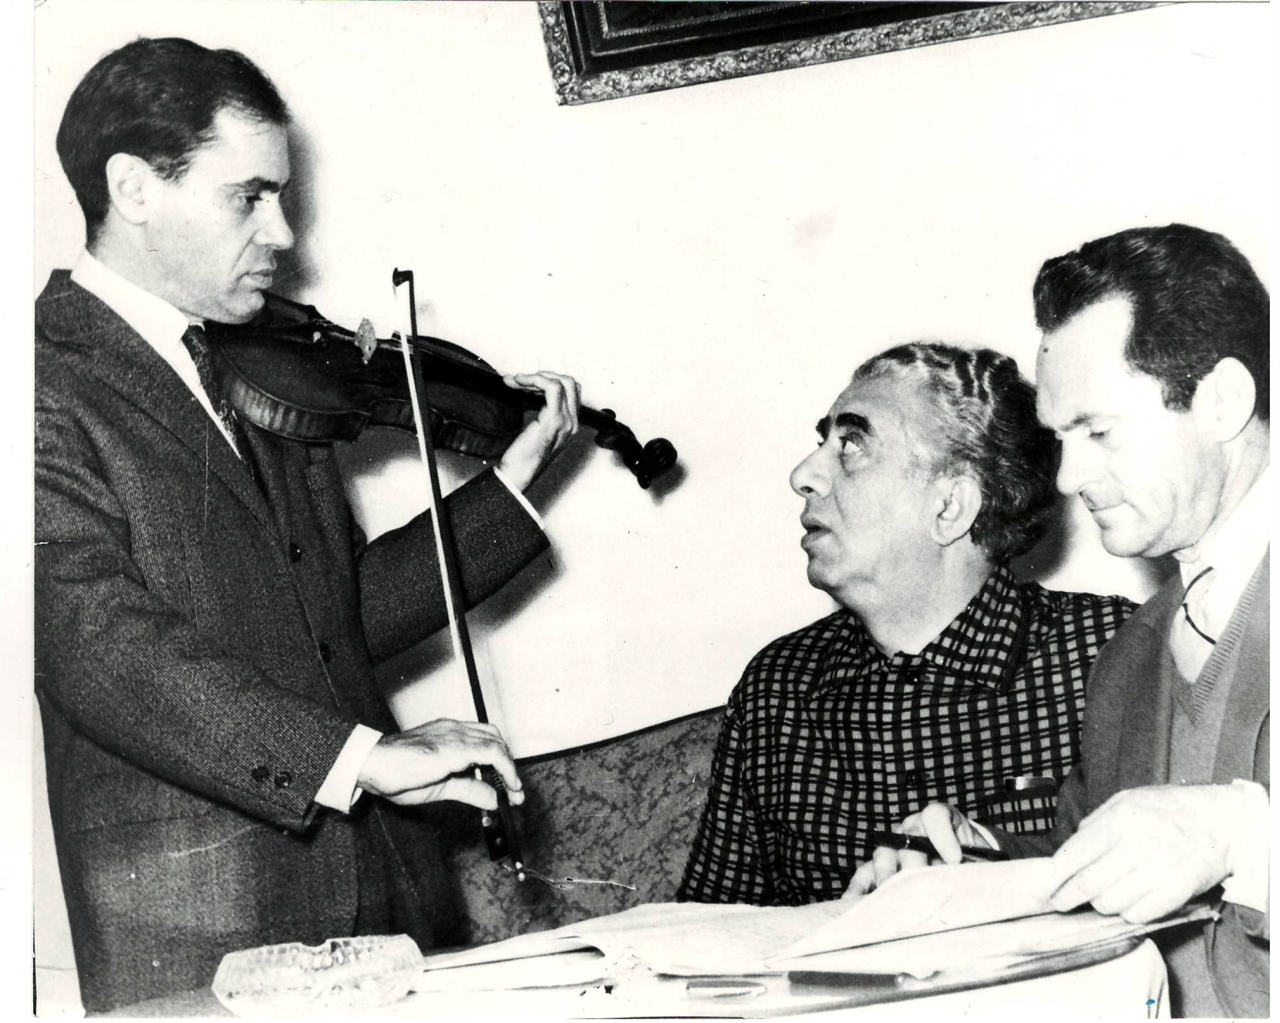 Լուսանկար. Ա. Խաչատրյանը անվանի ջութակահար Լ.Կոգանի և դիրիժոր Մ. Գուսմանի հետ